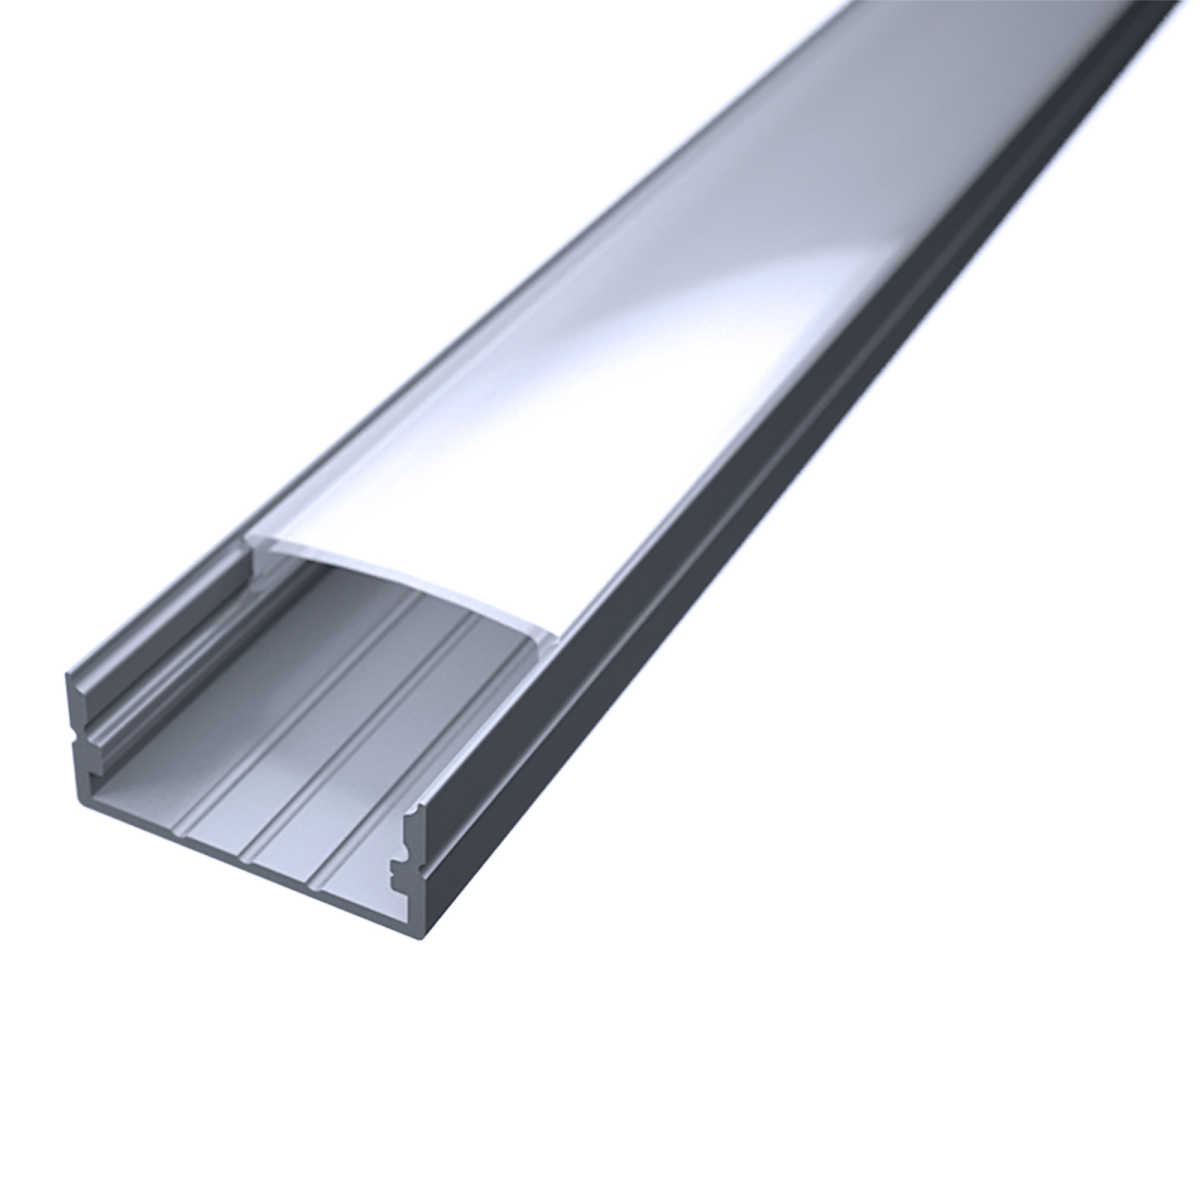 LED Flachprofil "Slim-Line max" | Abdeckung diffus | Zuschnitt auf 64cm |